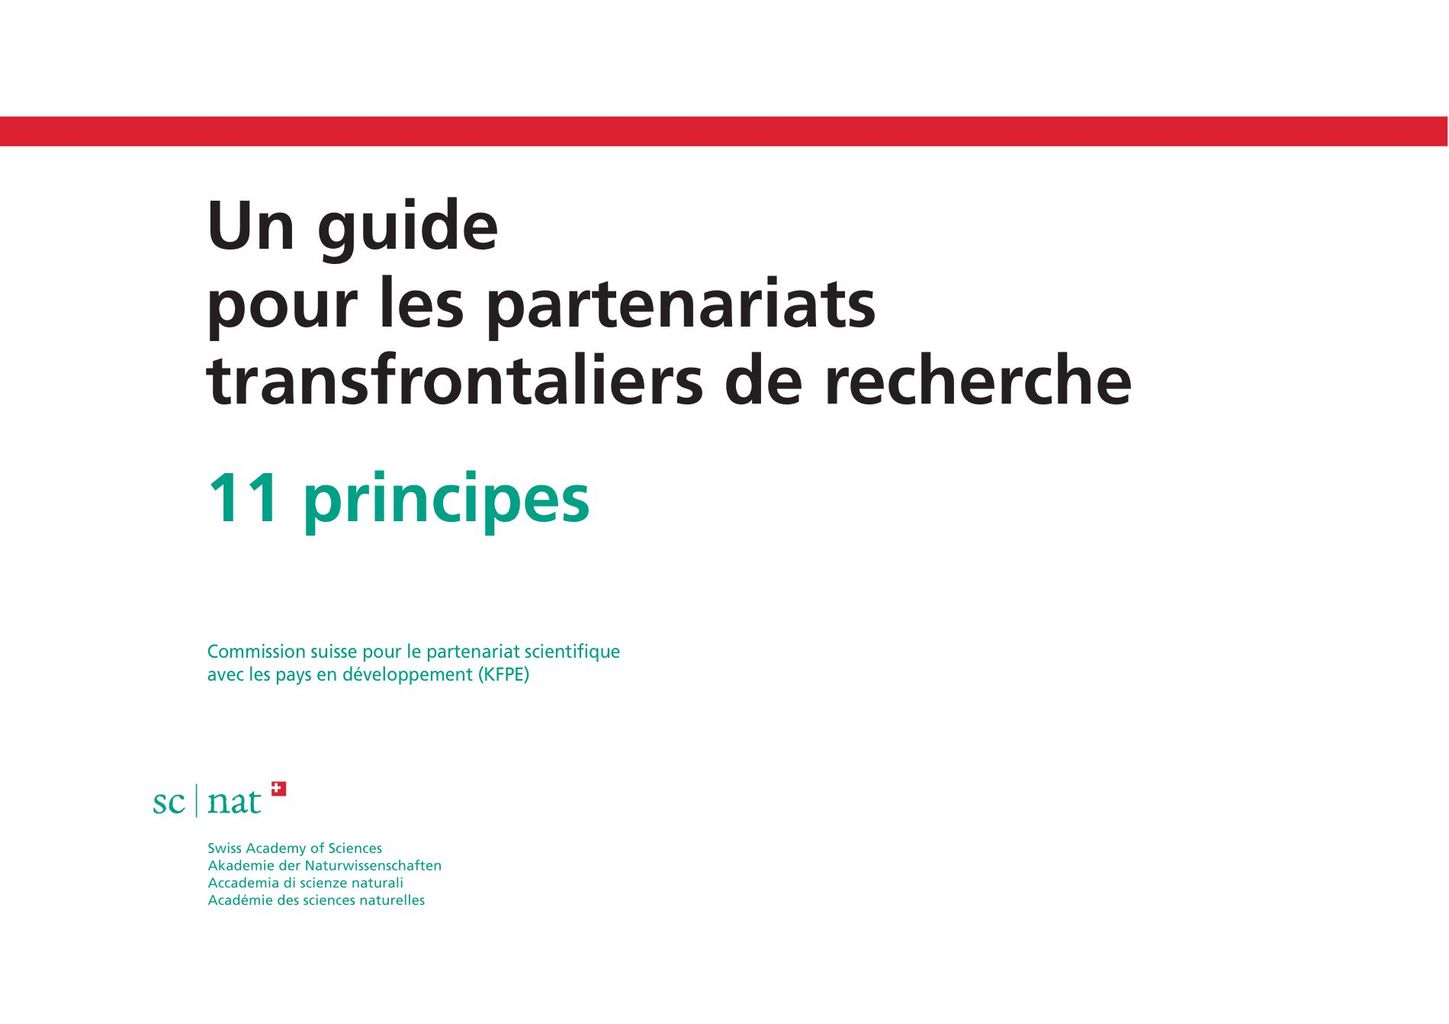 Un guide pour les partenariats transfrontaliers de recherche: 11 principes & 7 questions